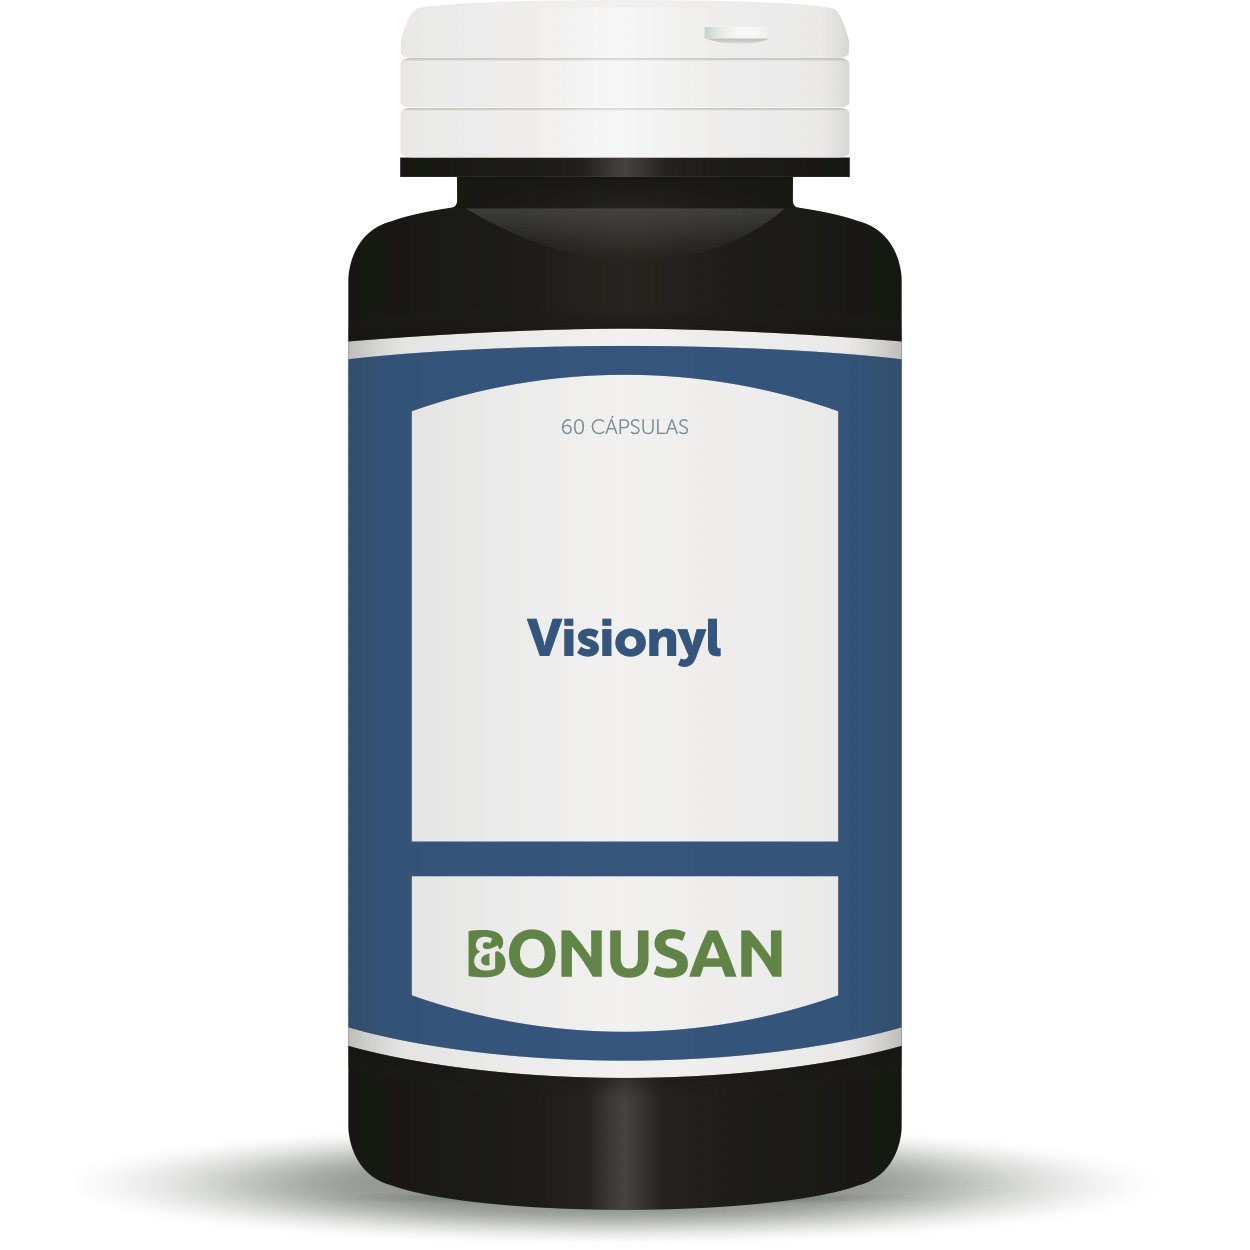 Visionyl 60 Capsulas | Bonusan - Dietetica Ferrer